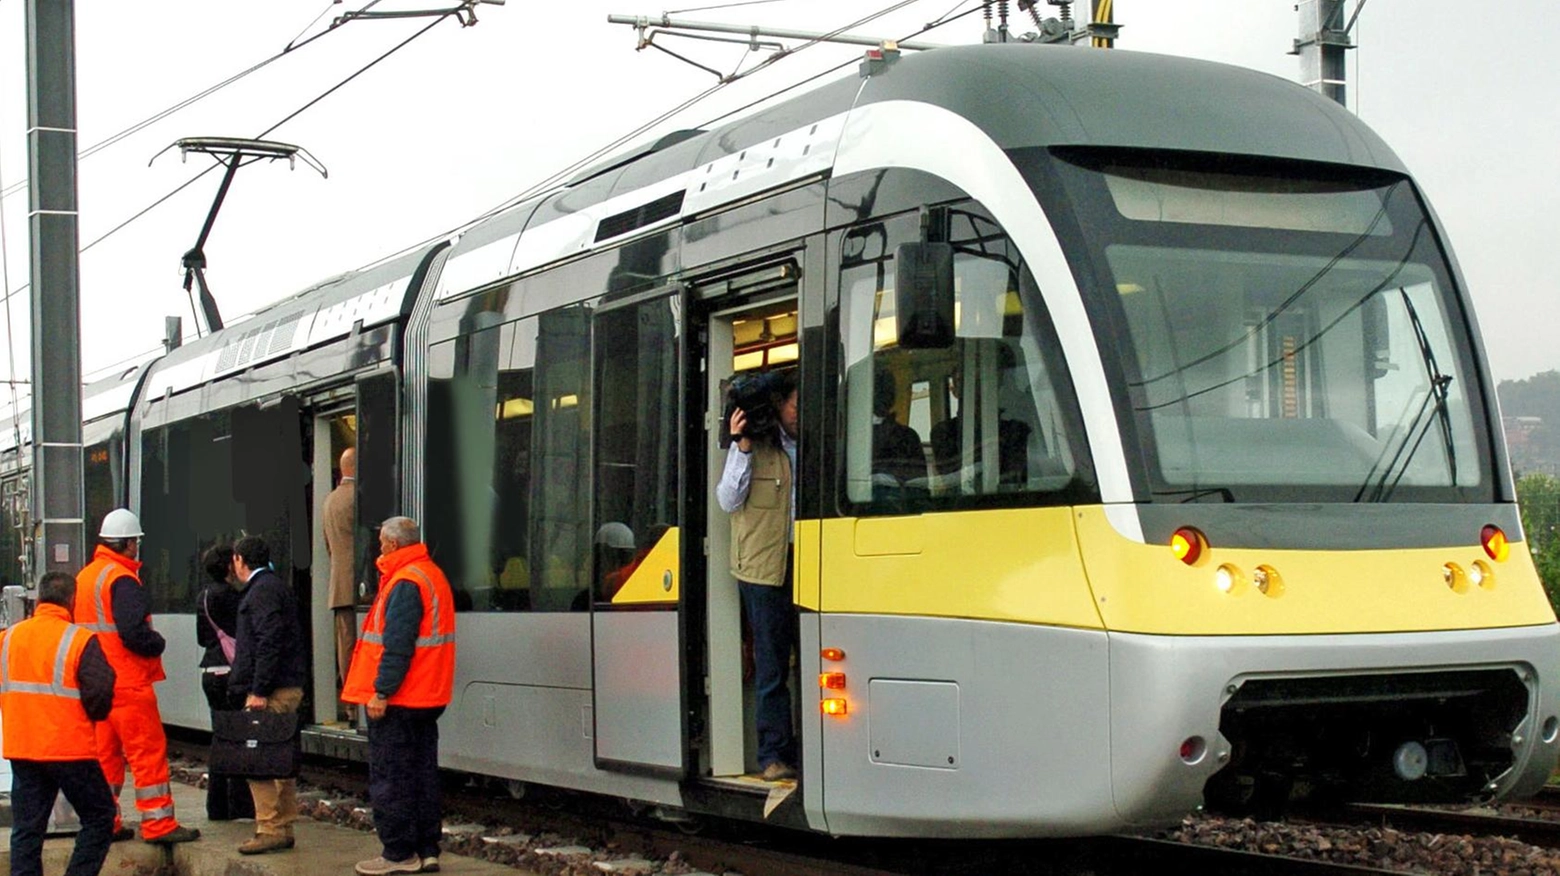 Spray urticante sul tram. Evacuati e soccorsi settanta passeggeri